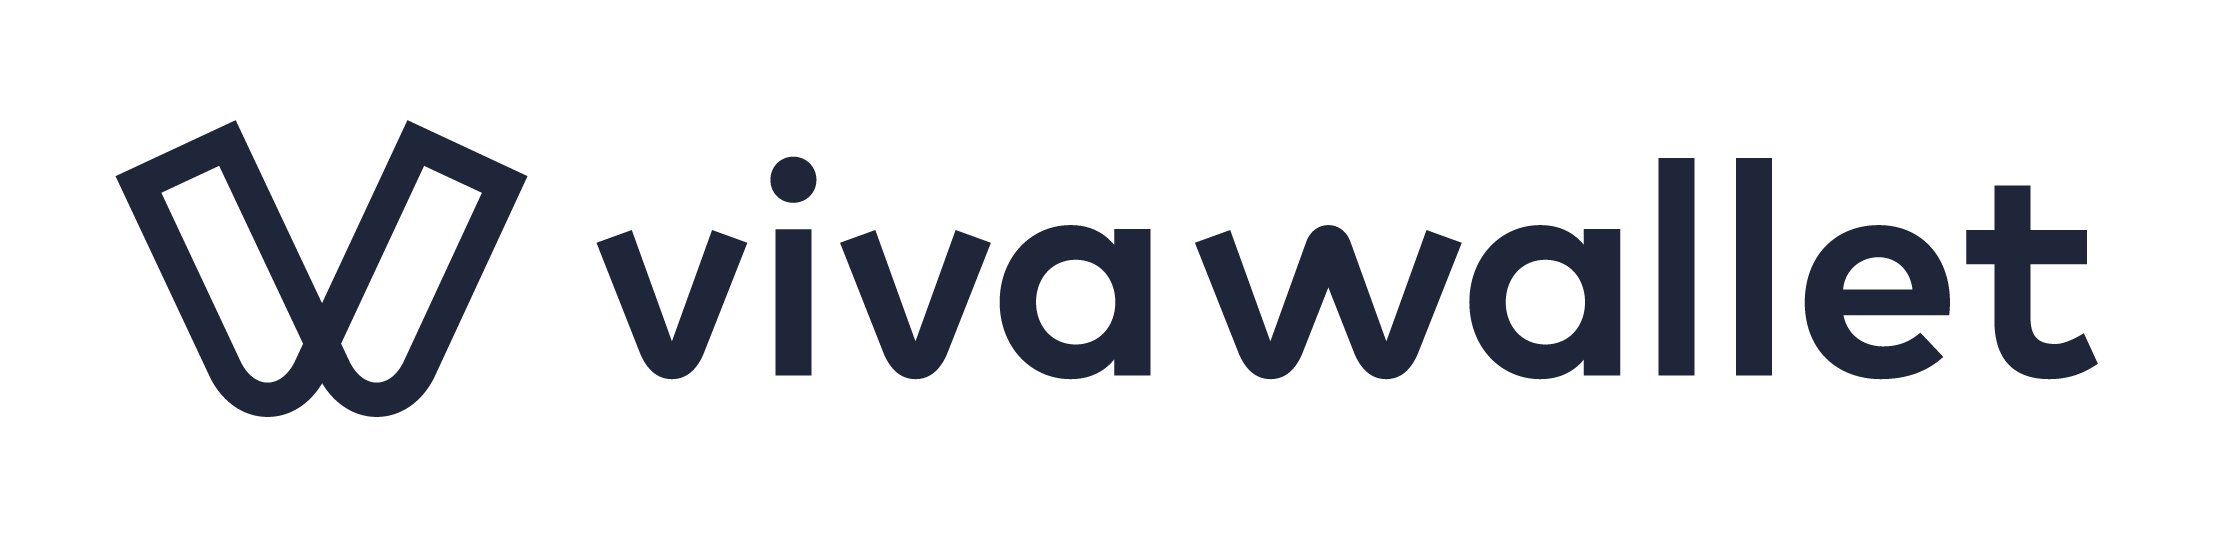 Viva Wallet CiN-GmbH